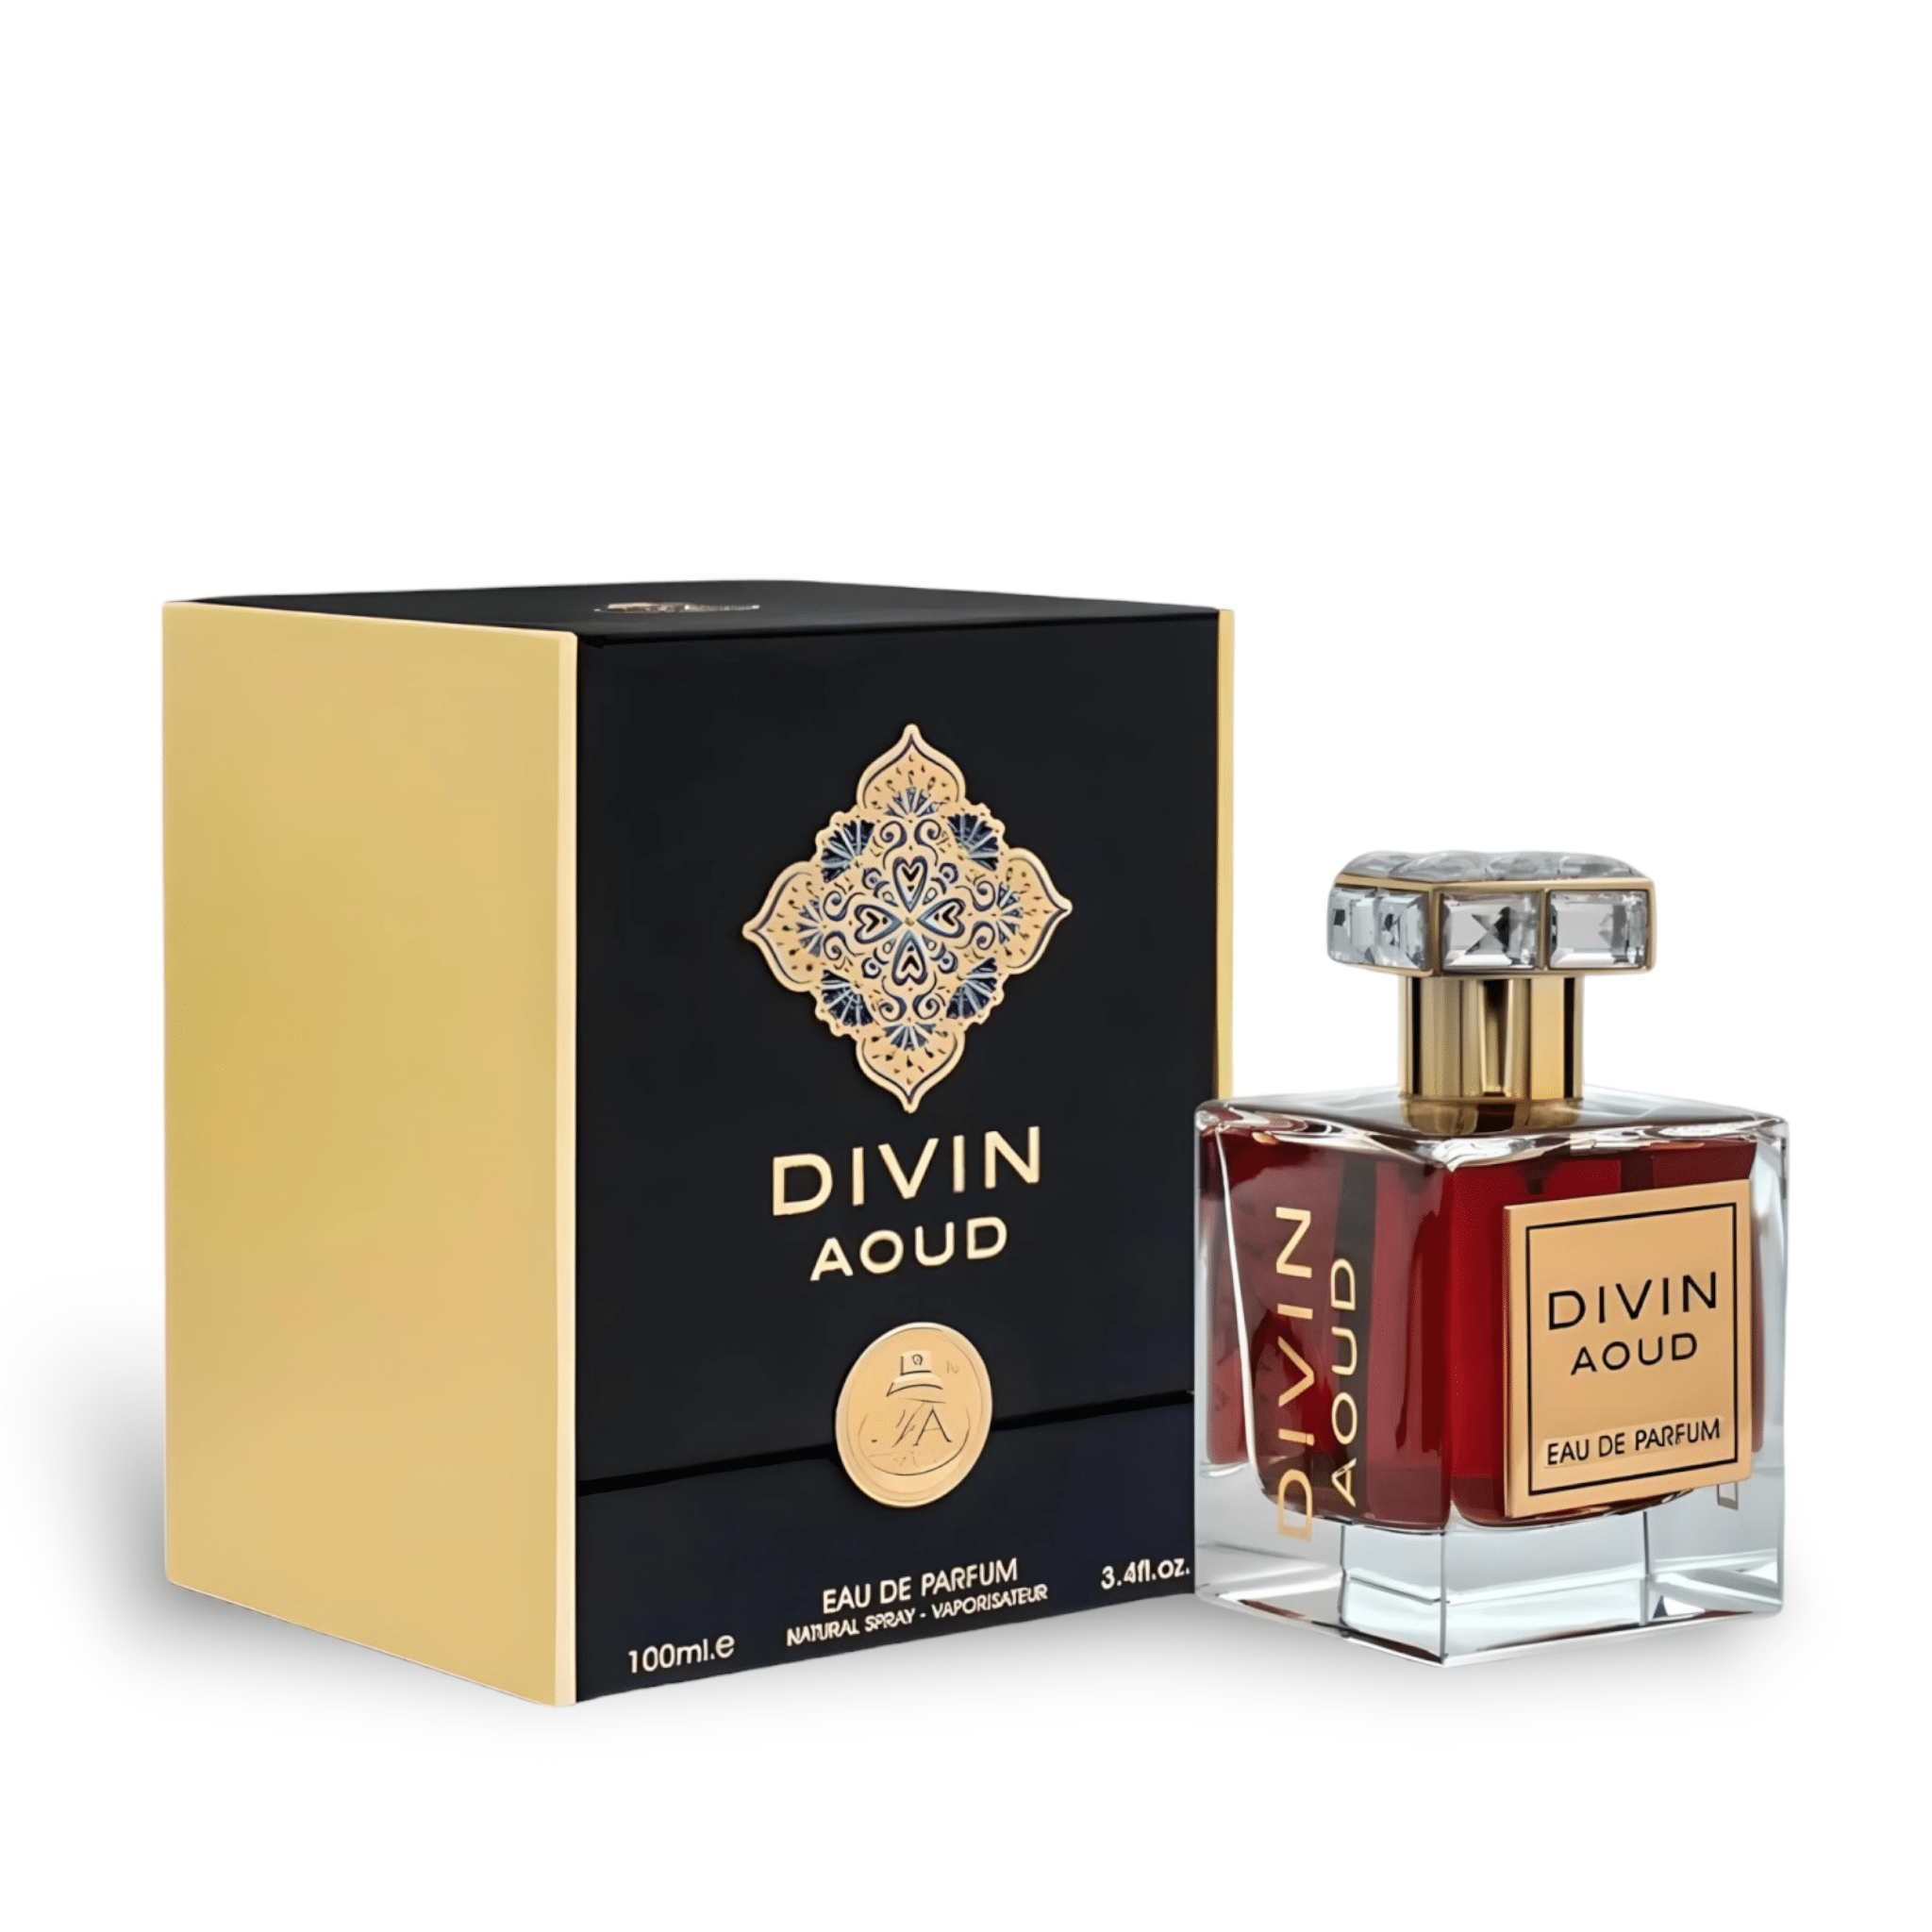 Divin Aoud Perfume / Eau De Parfum 100Ml By Fa Paris (Fragrance World)